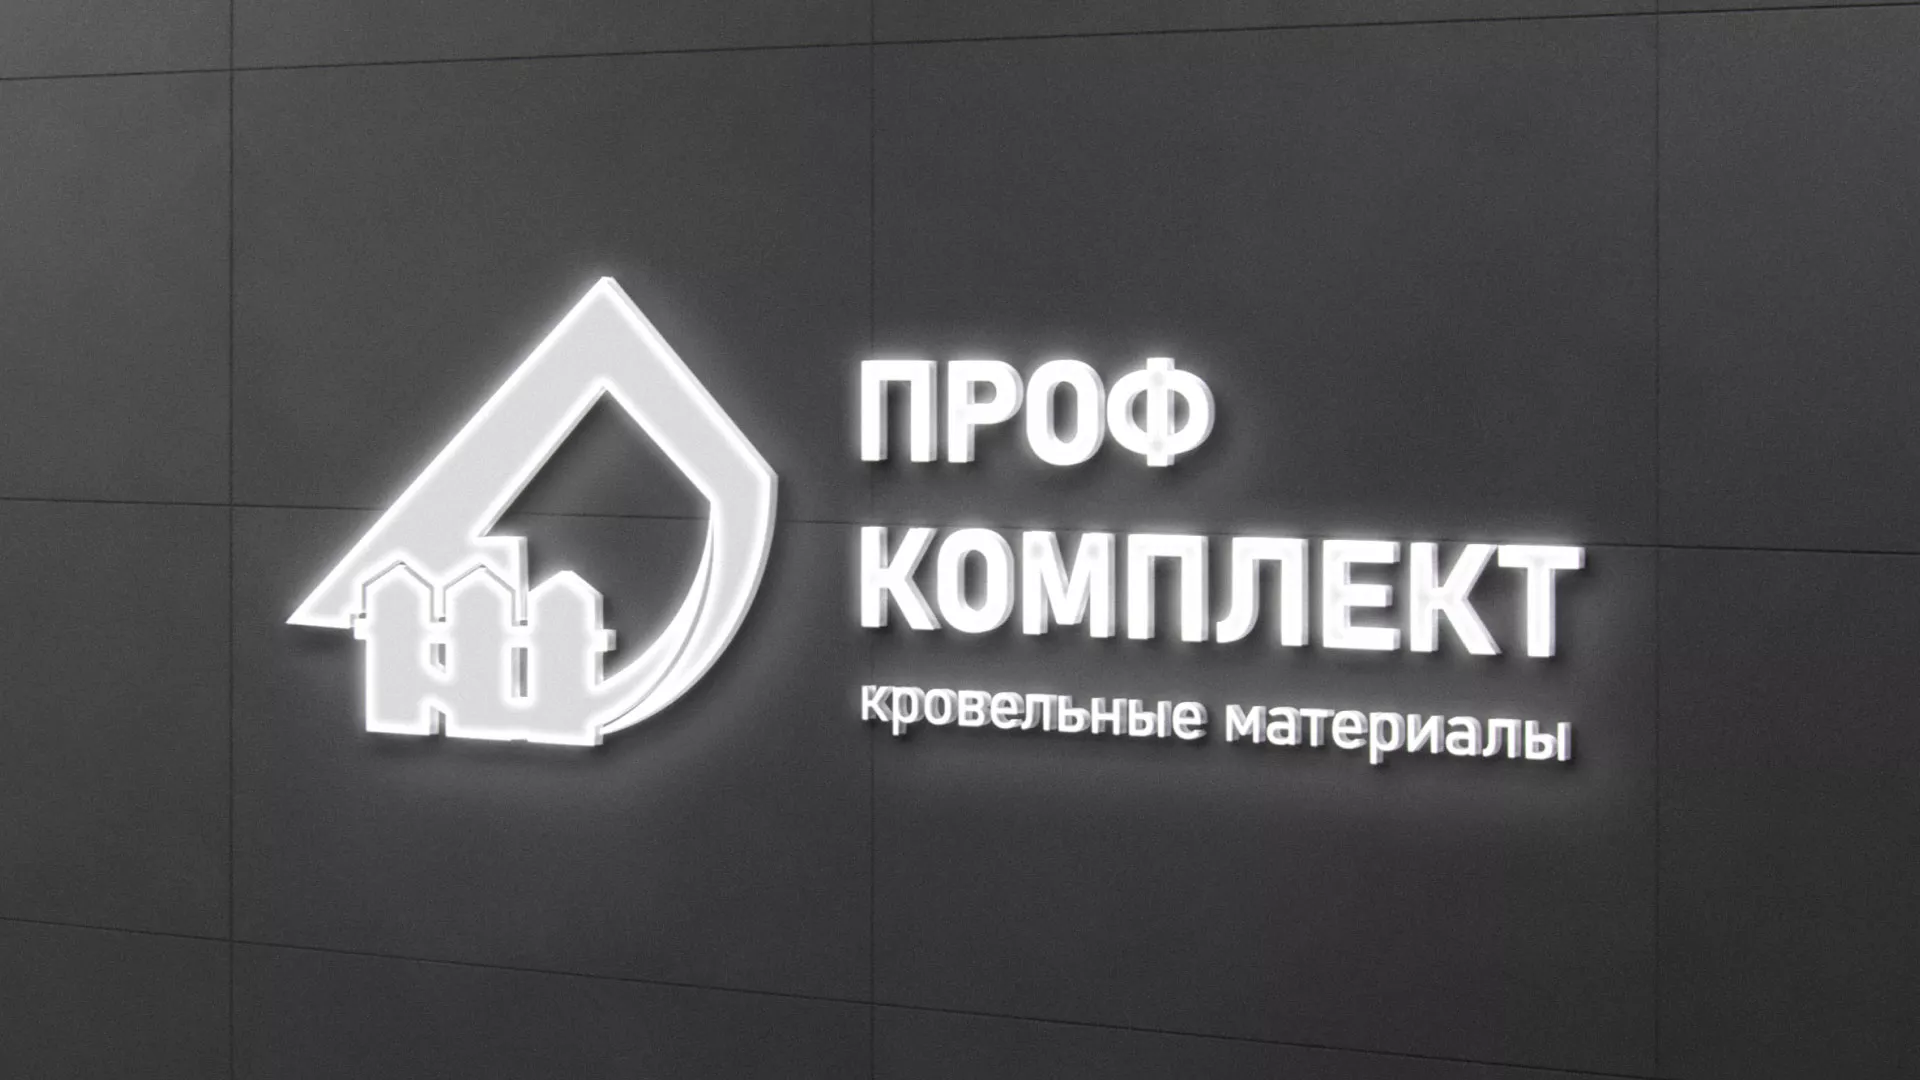 Разработка логотипа «Проф Комплект» в Константиновске